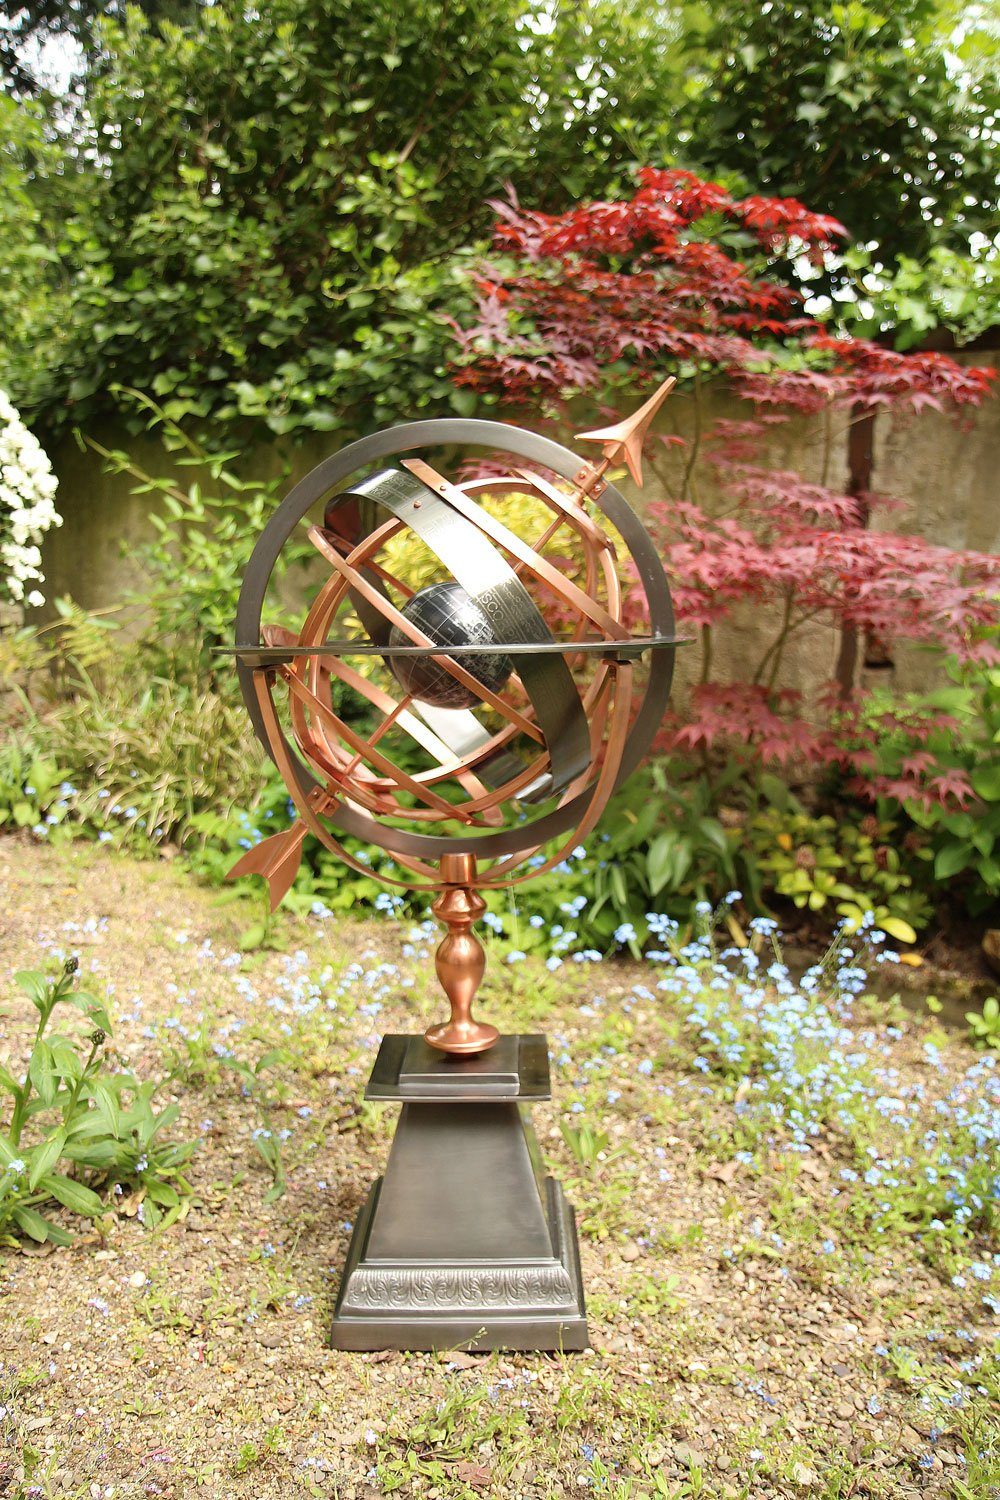 Aubaho Gartenfigur Sonnenuhr Eisen Dekoration 93cm Kupfer Antik-Stil Weltkugel Garten